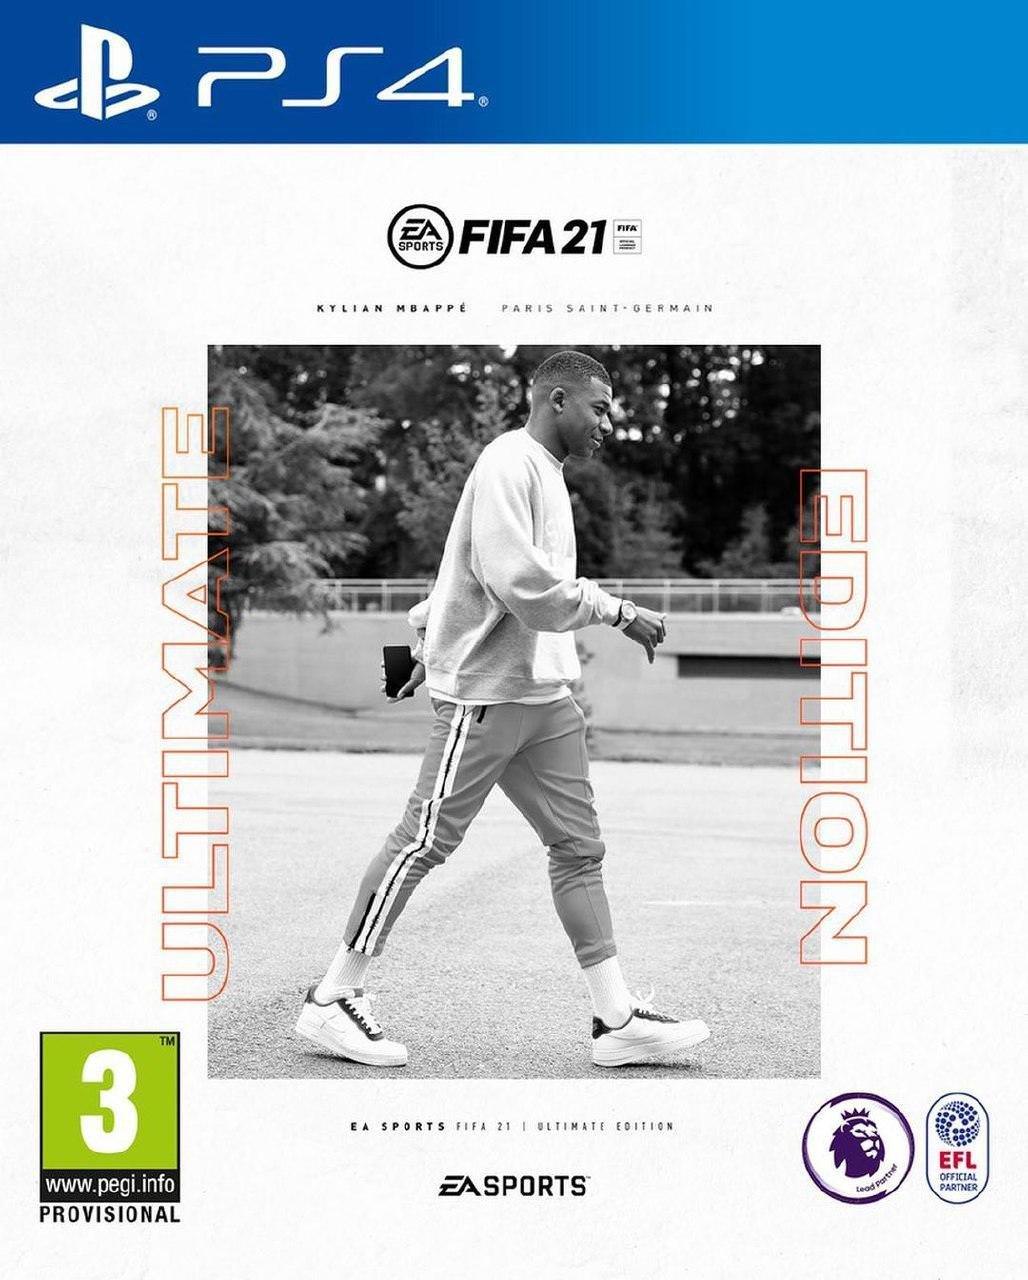 کیلیان امباپه روی جلد نسخه آلتیمیت ادیشن بازی فیفا 21 / FIFA 21